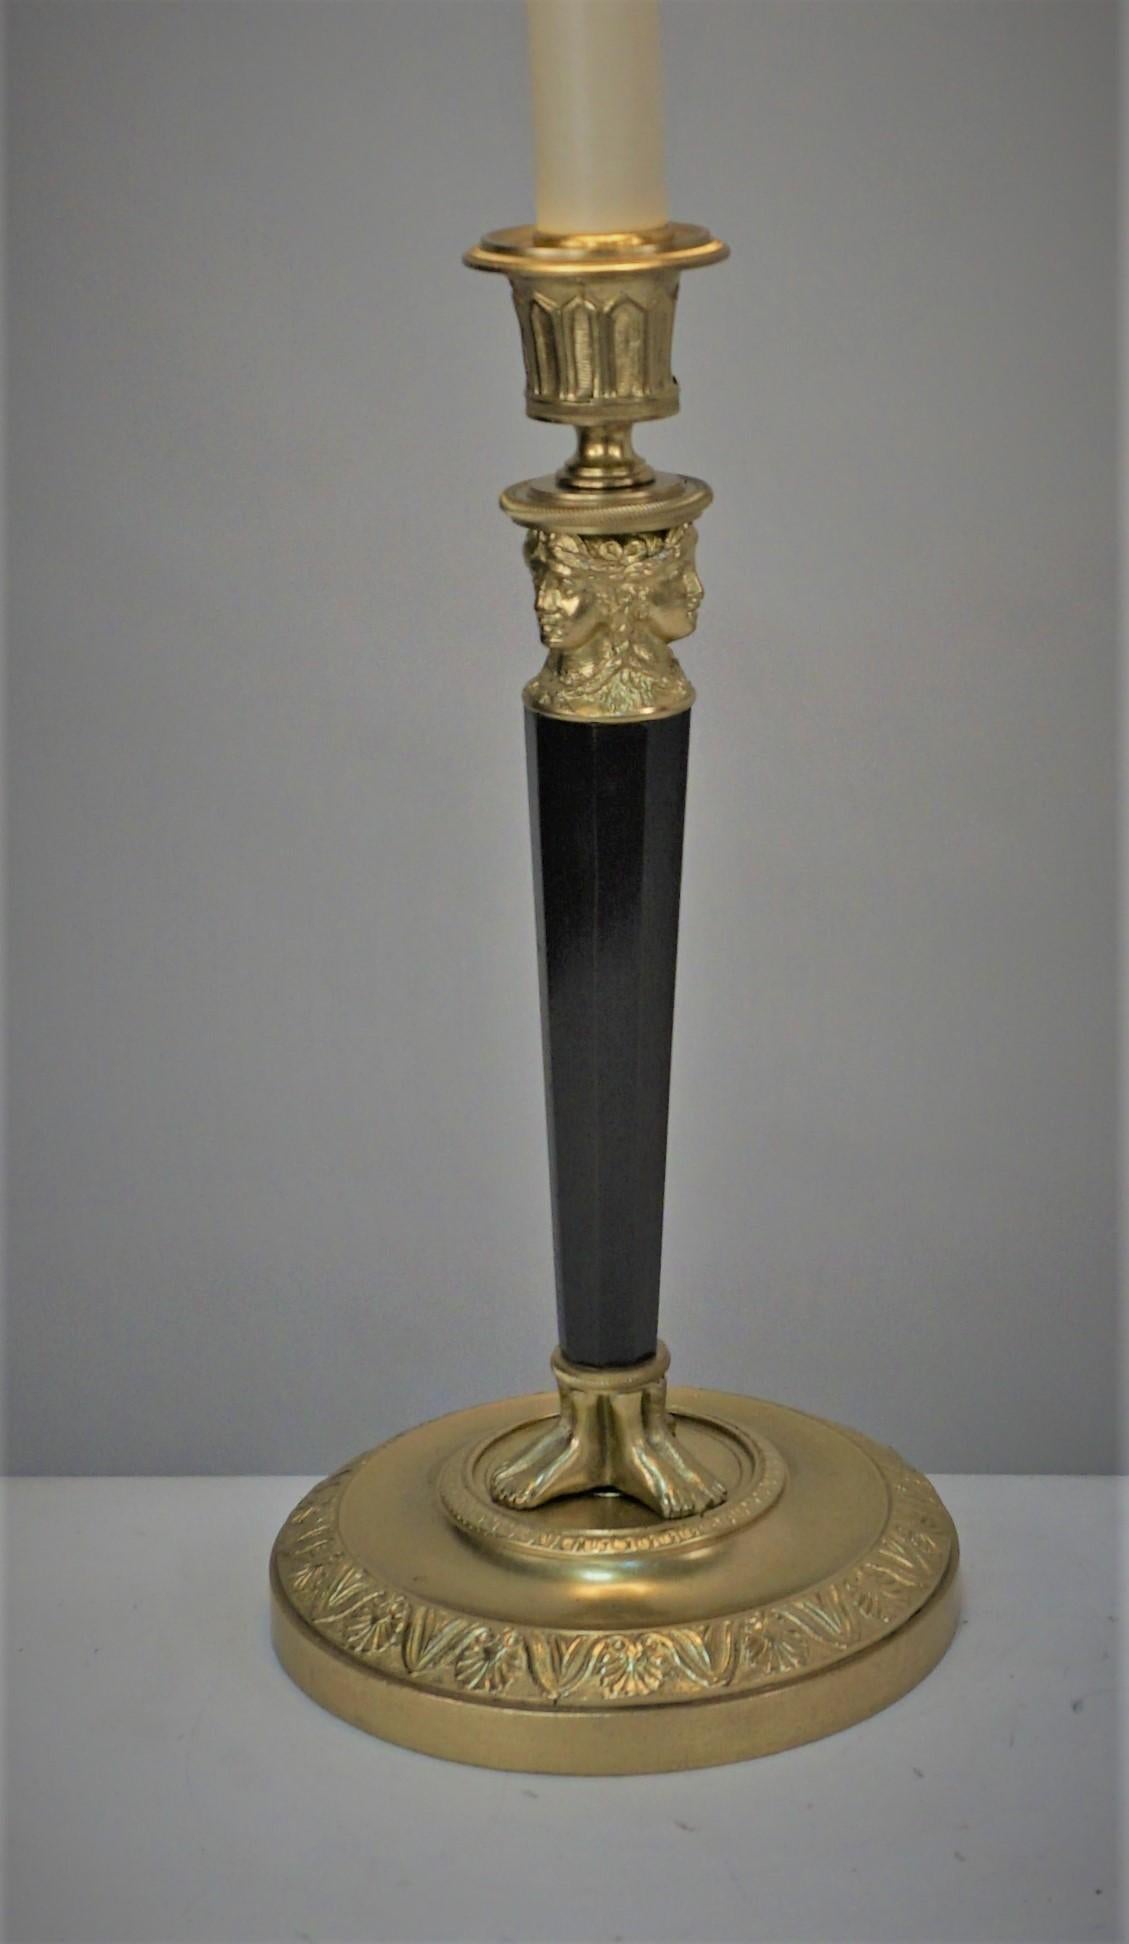 Chandelier Empire en bronze bicolore qui a été électrifié comme lampe de table avec petit abat-jour en soie.